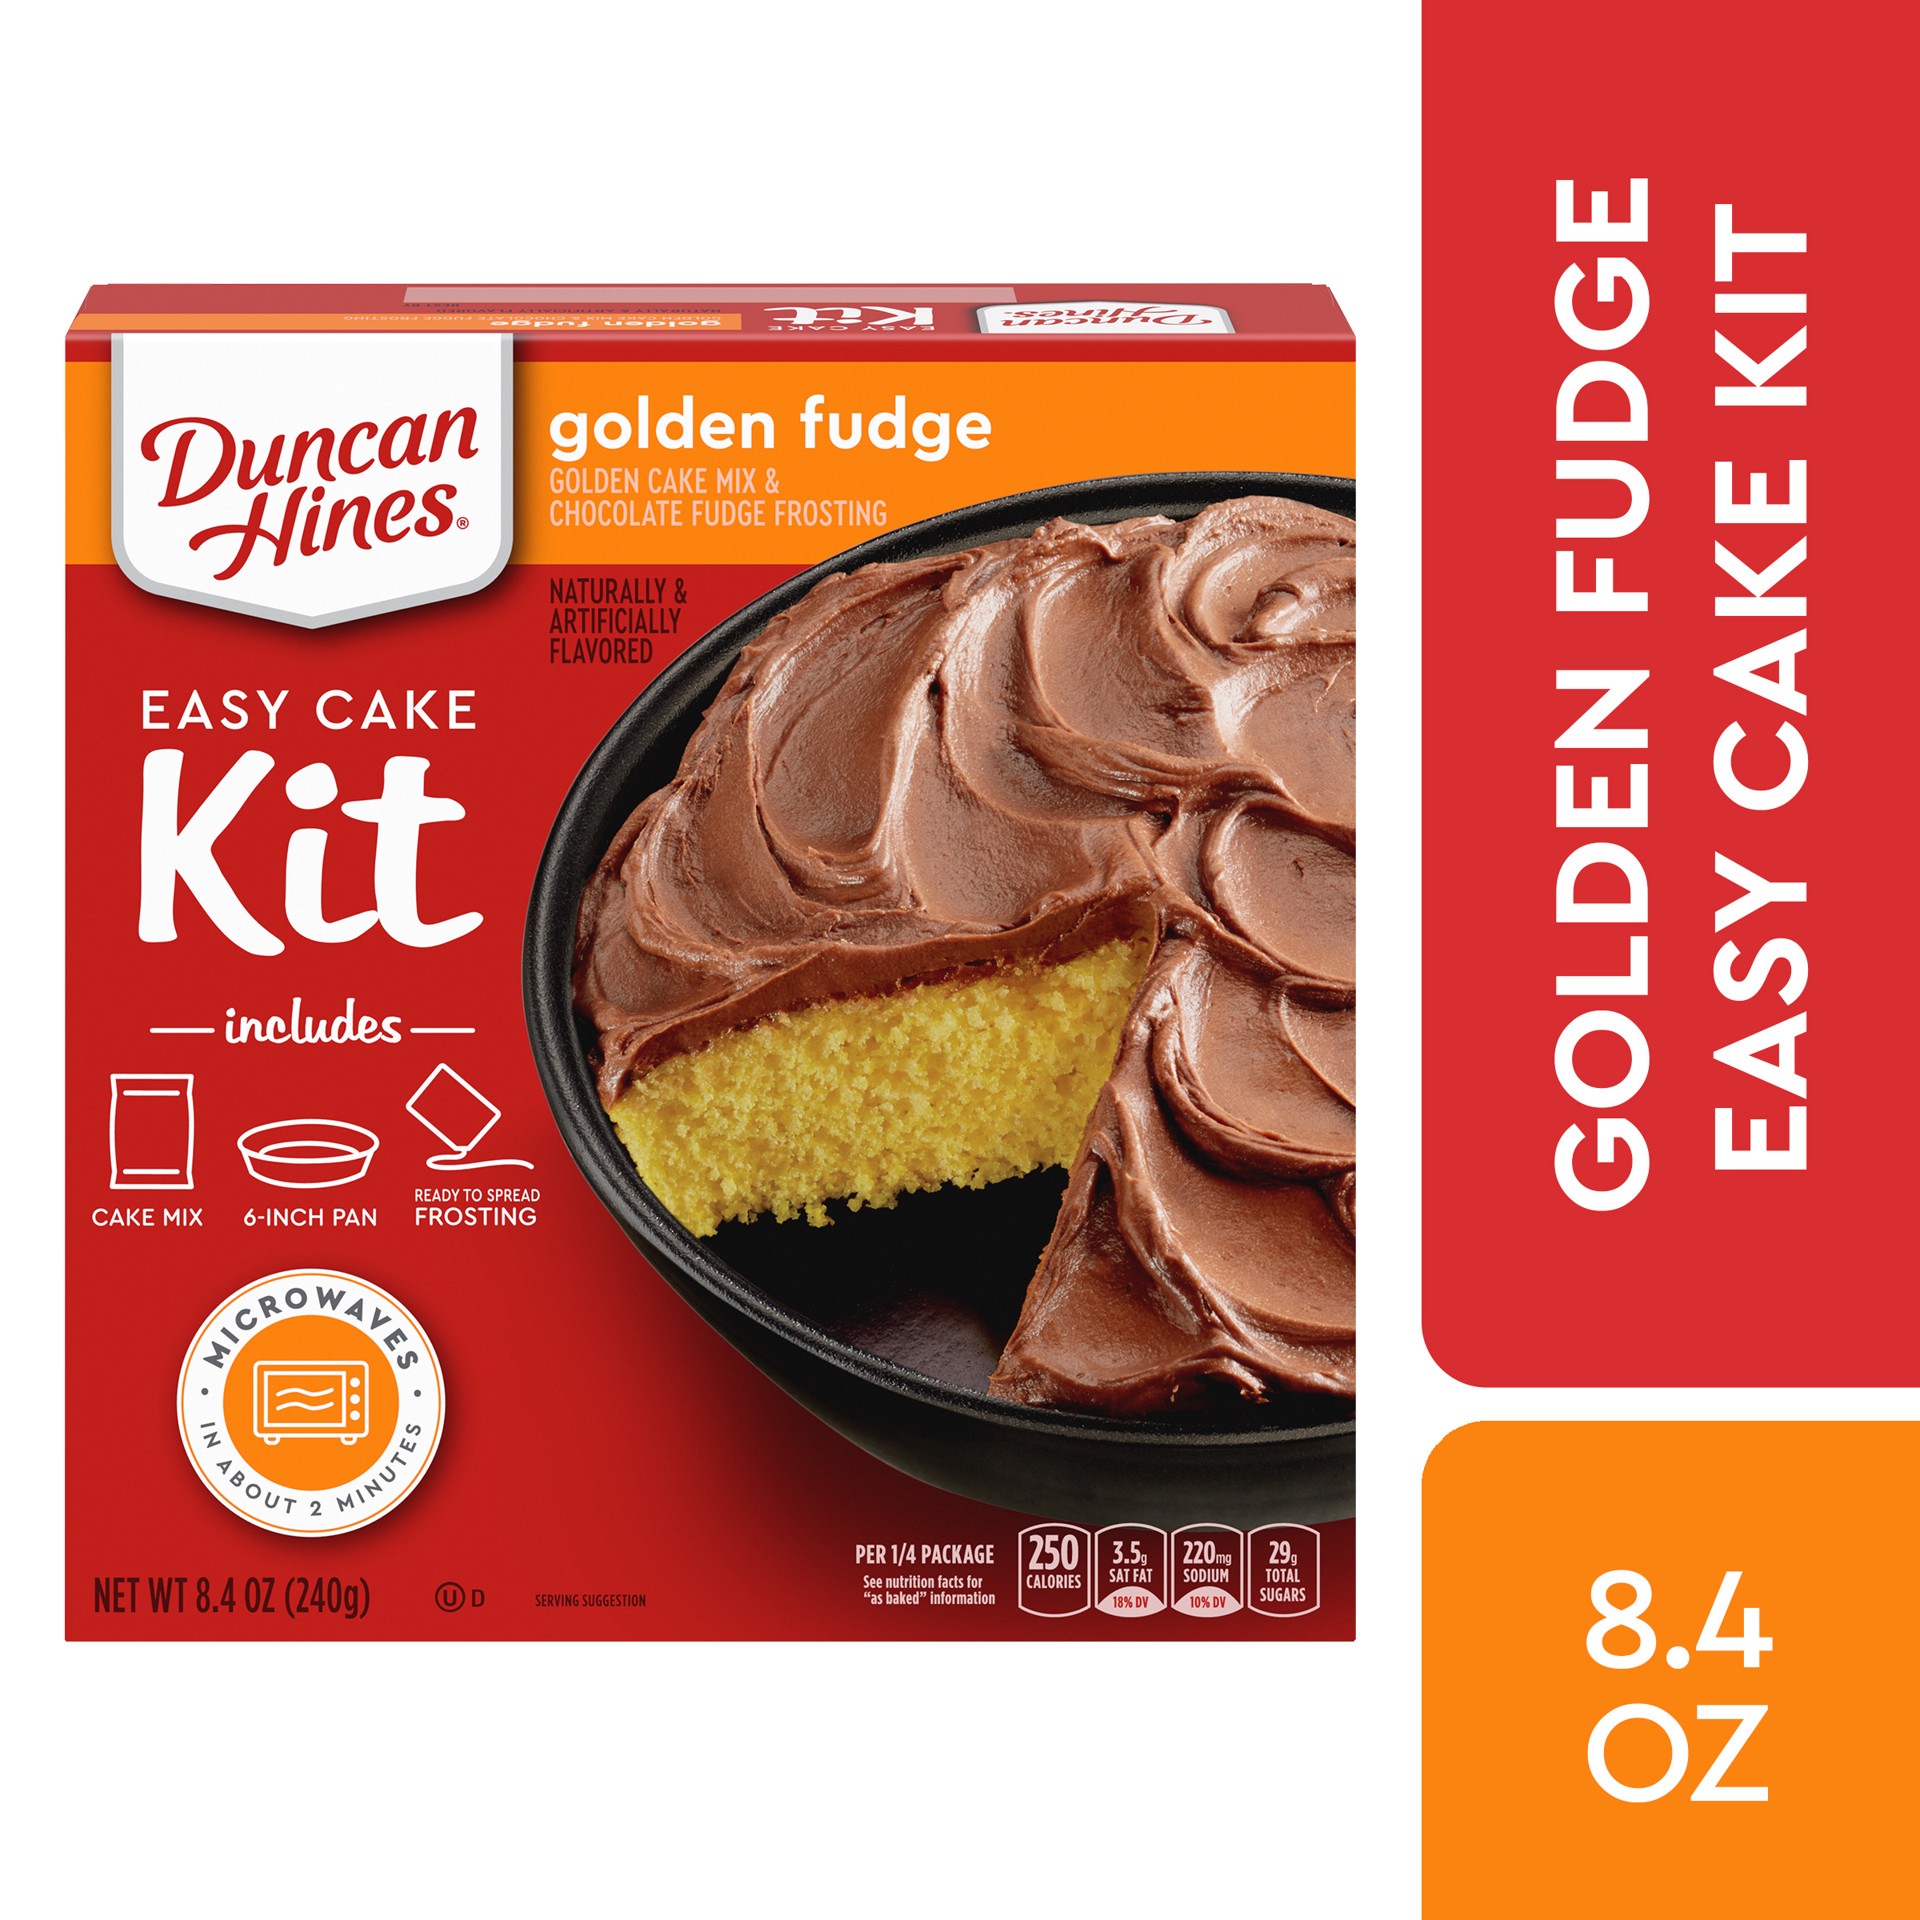 slide 1 of 5, Duncan Hines Golden Fudge Easy Cake Kit 8.4 oz, 8.4 oz